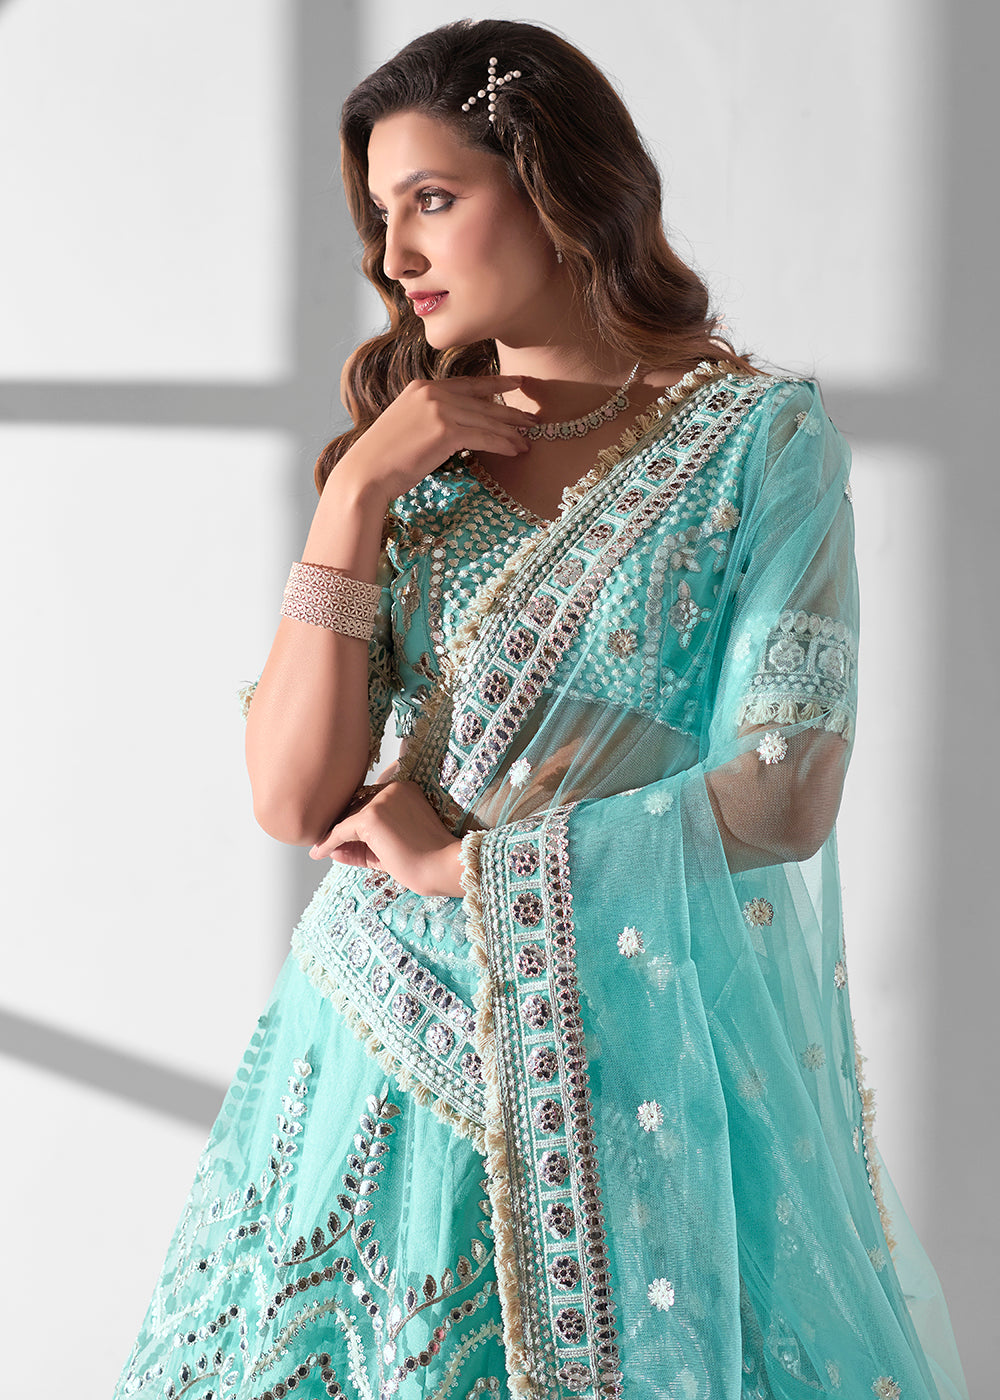 Buy Now Aqua Blue Multi Embroidered Wedding Festive Lehenga Choli Online in USA, UK, Canada & Worldwide at Empress Clothing. 